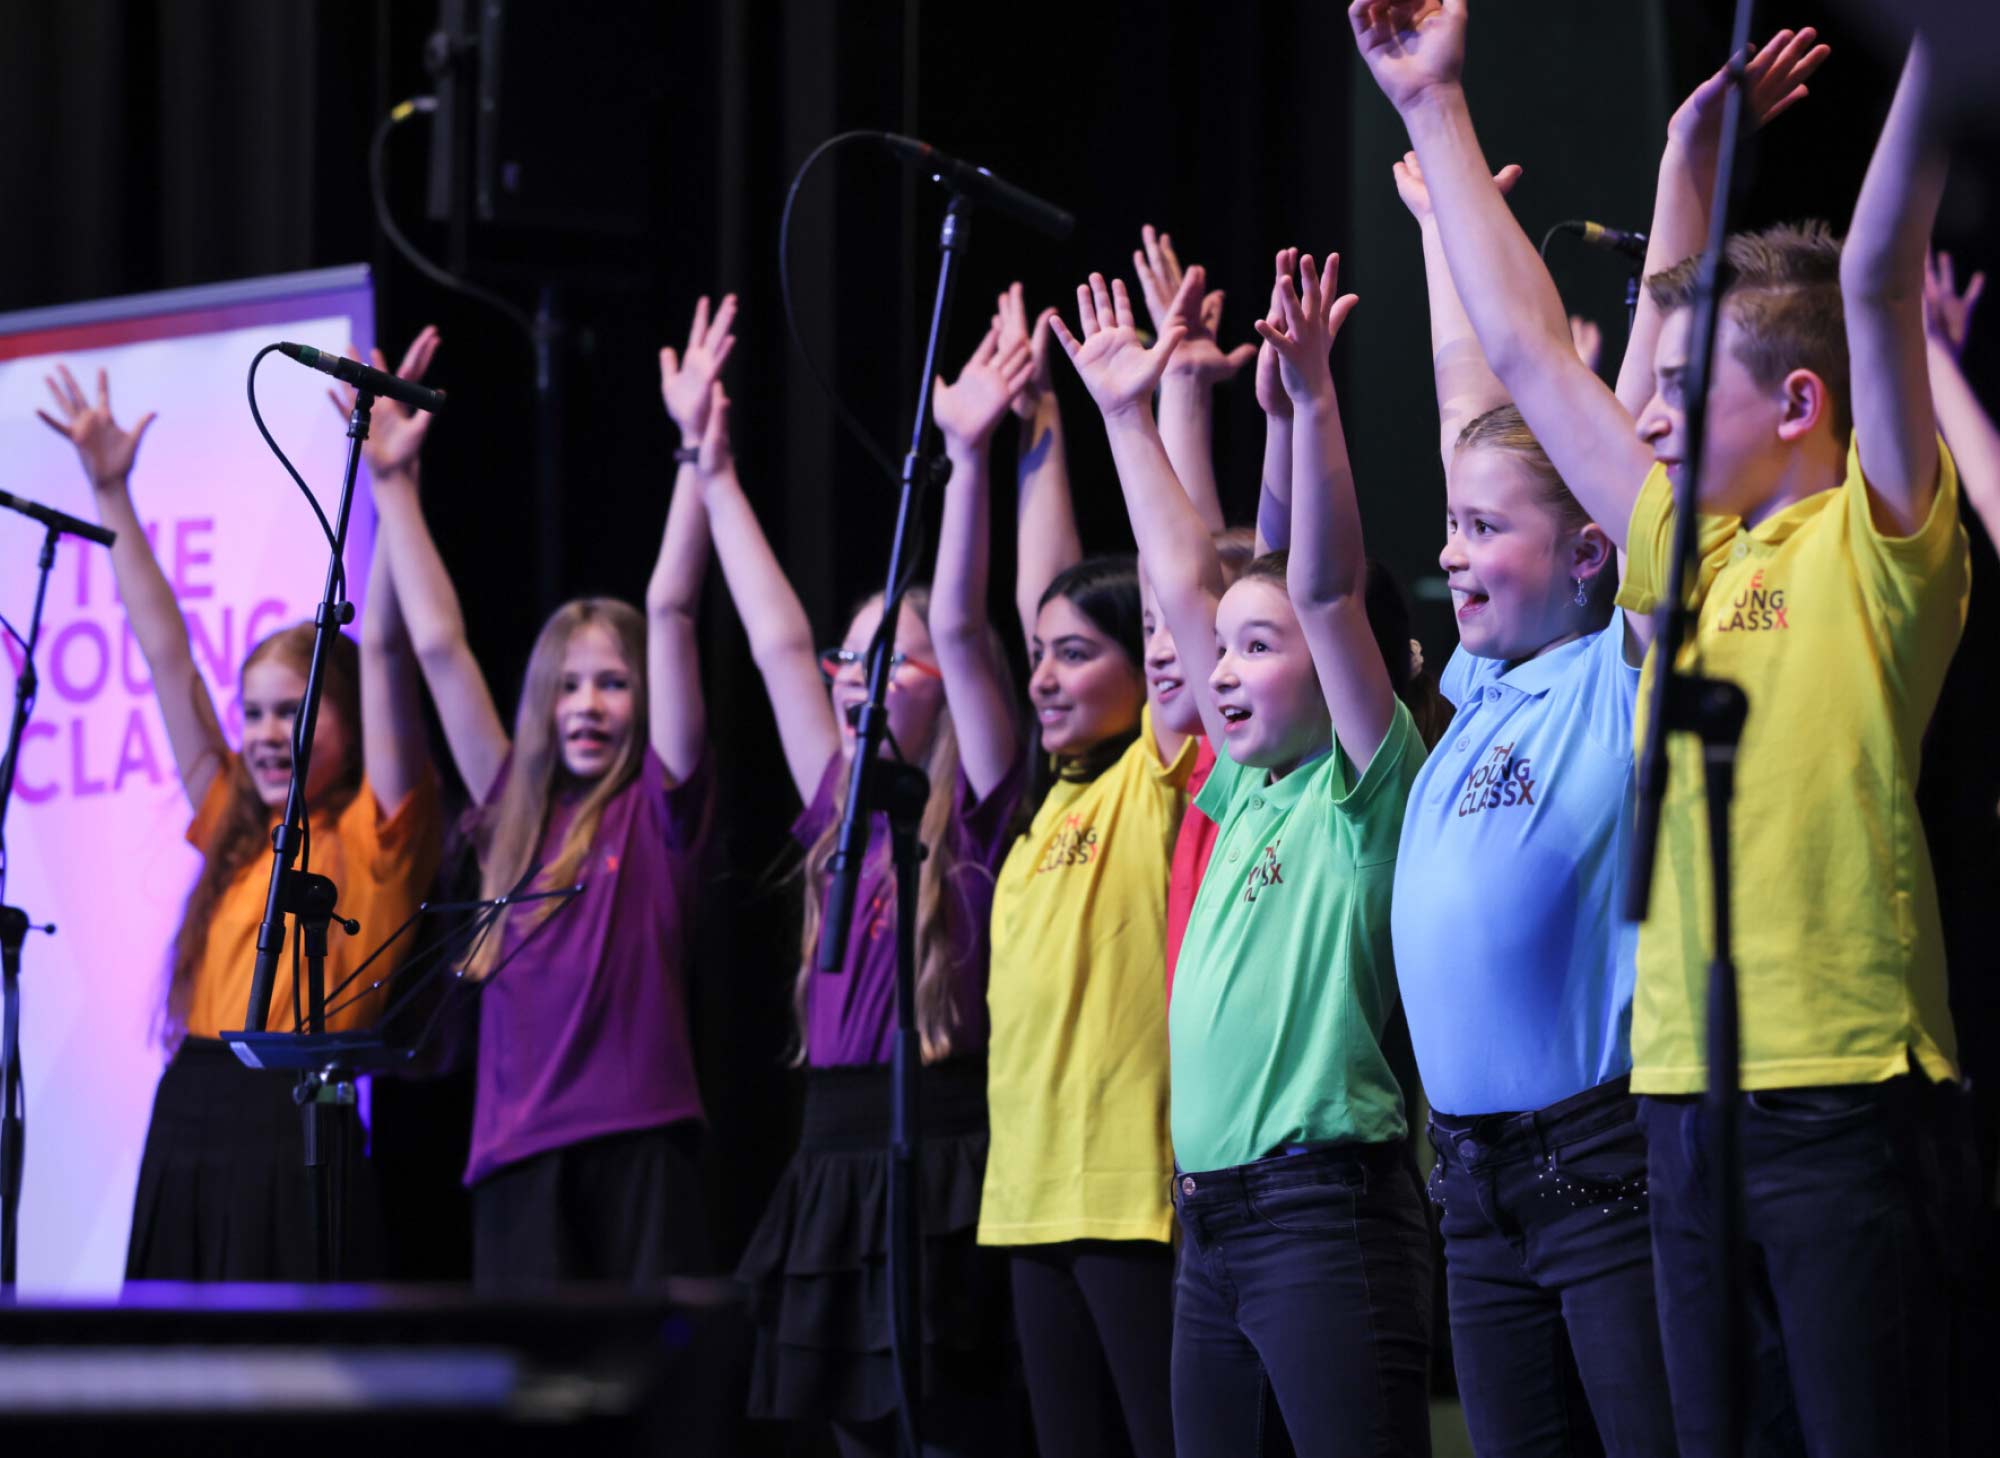 Kinder bei einem Gesangsauftritt auf der Bühne in bunten T-Shirts